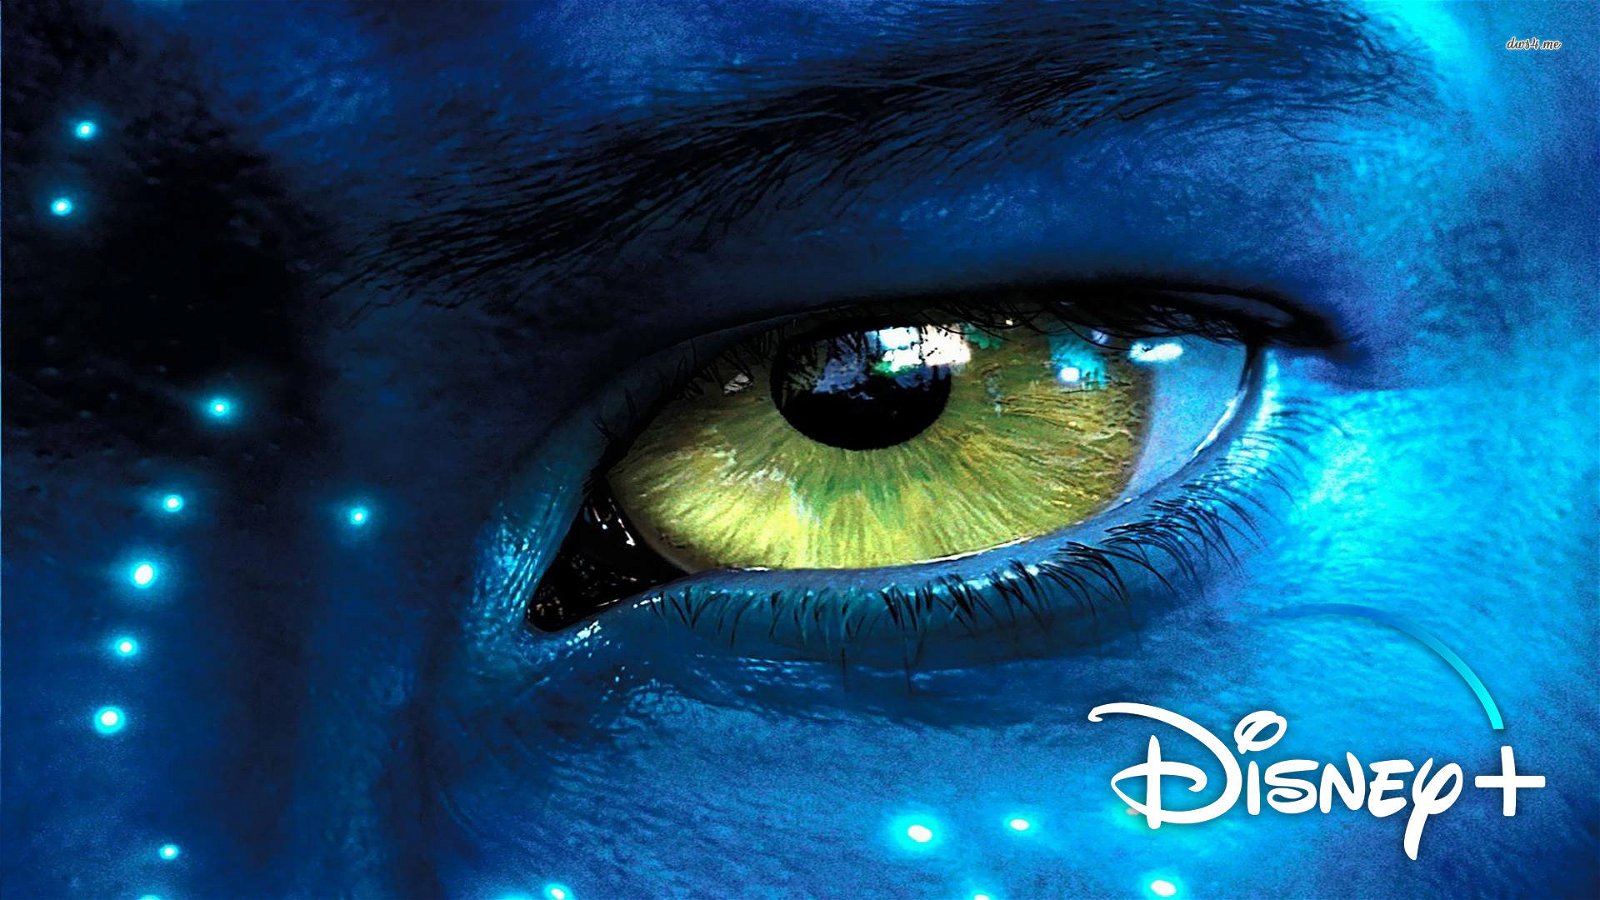 Immagine di Disney+: aggiunto Avatar al lancio della piattaforma